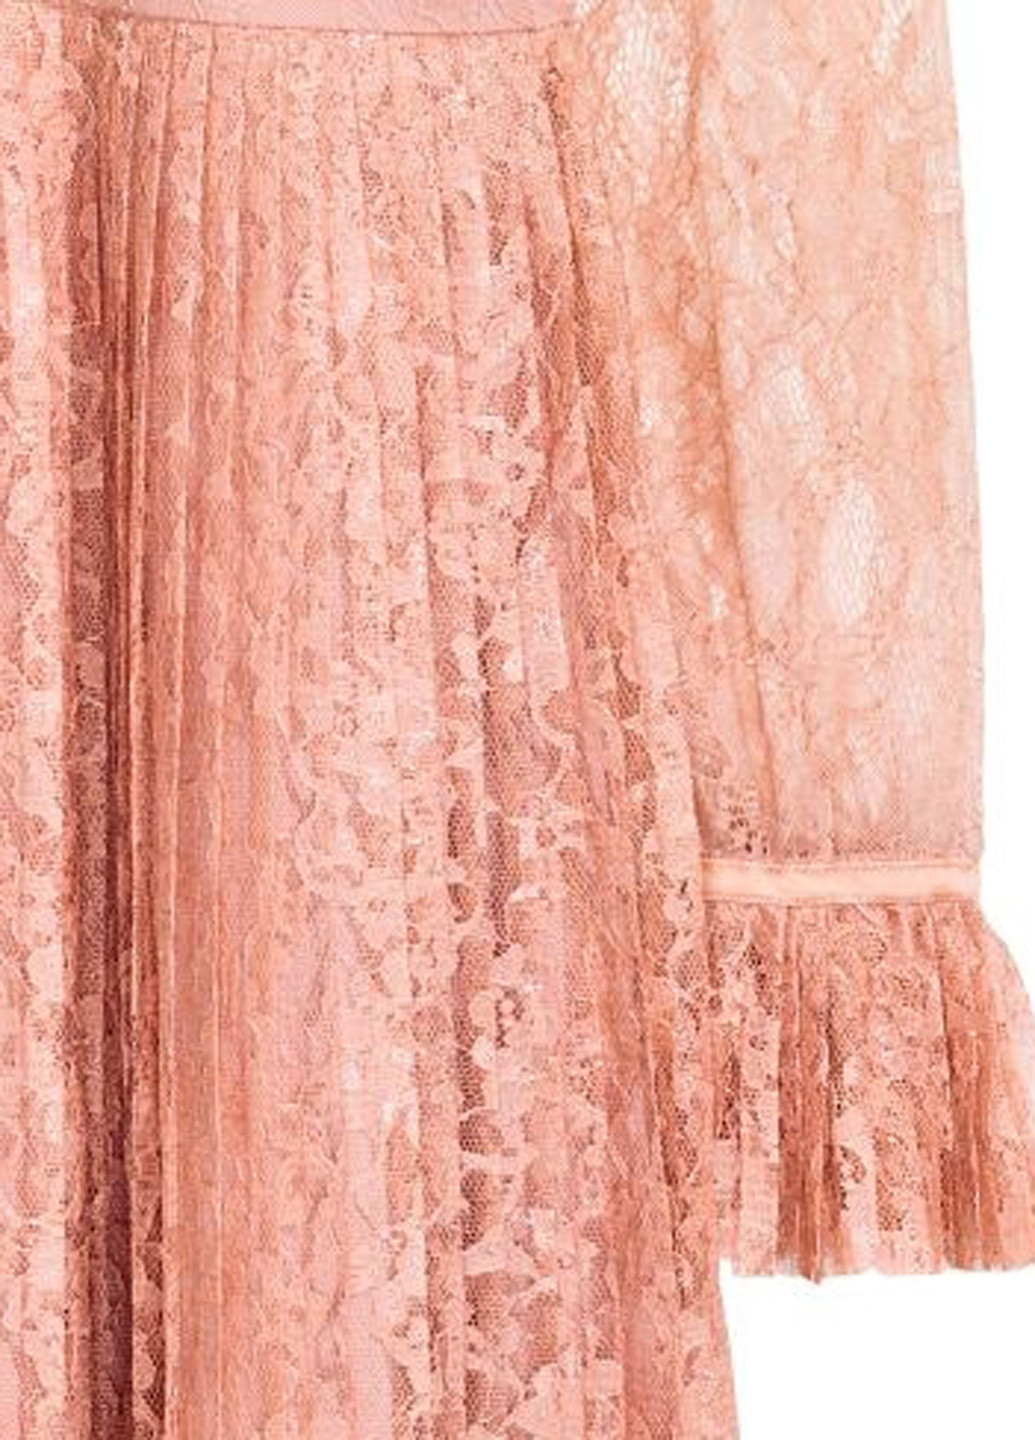 Пудровое коктейльное платье плиссированное H&M однотонное